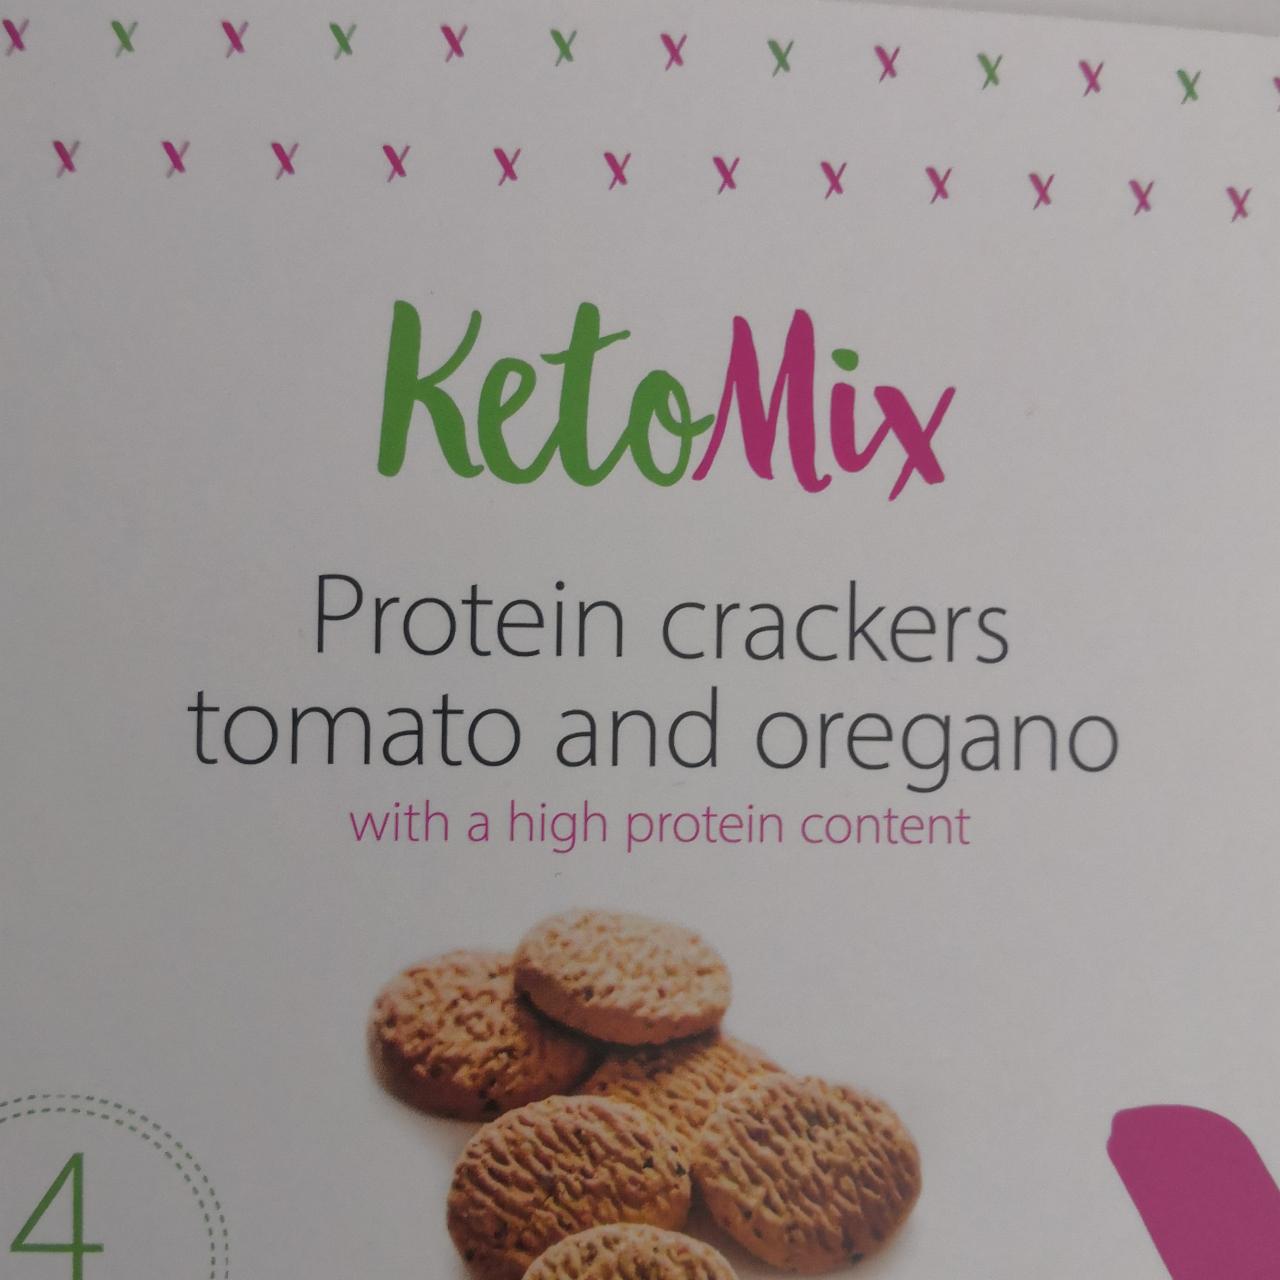 Fotografie - Protein crackers tomato and oregano KetoMix